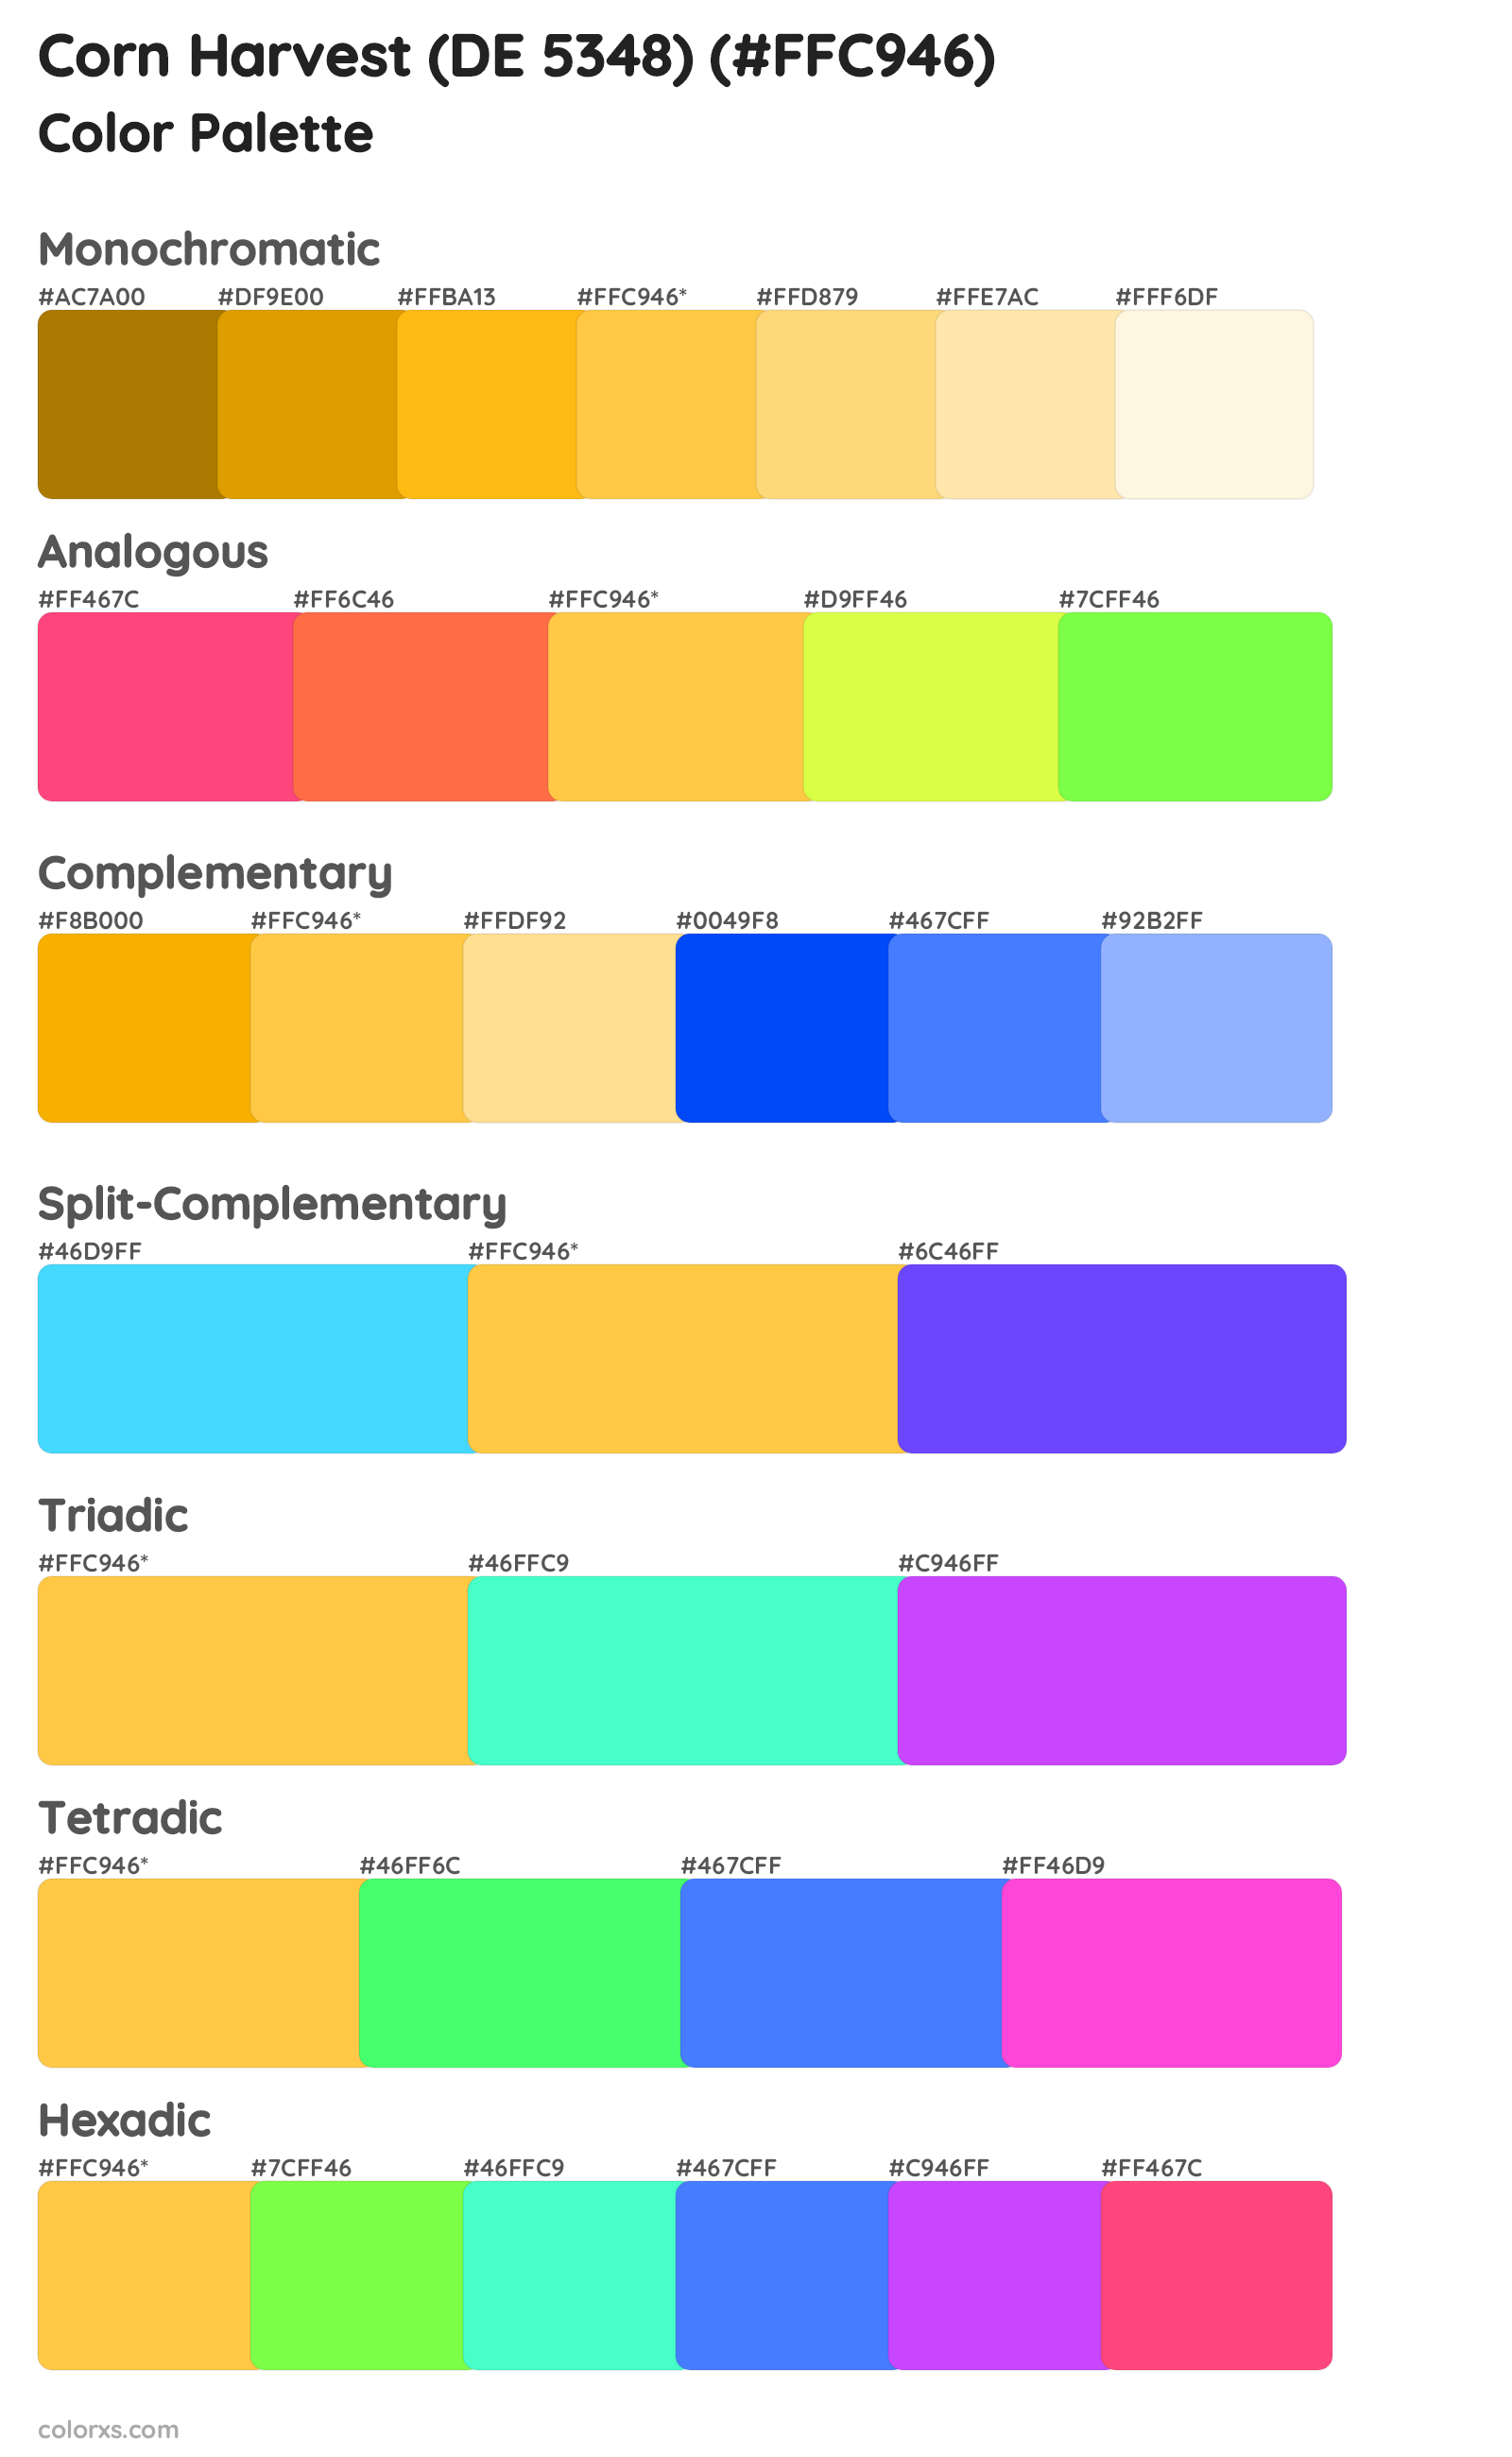 Corn Harvest (DE 5348) Color Scheme Palettes